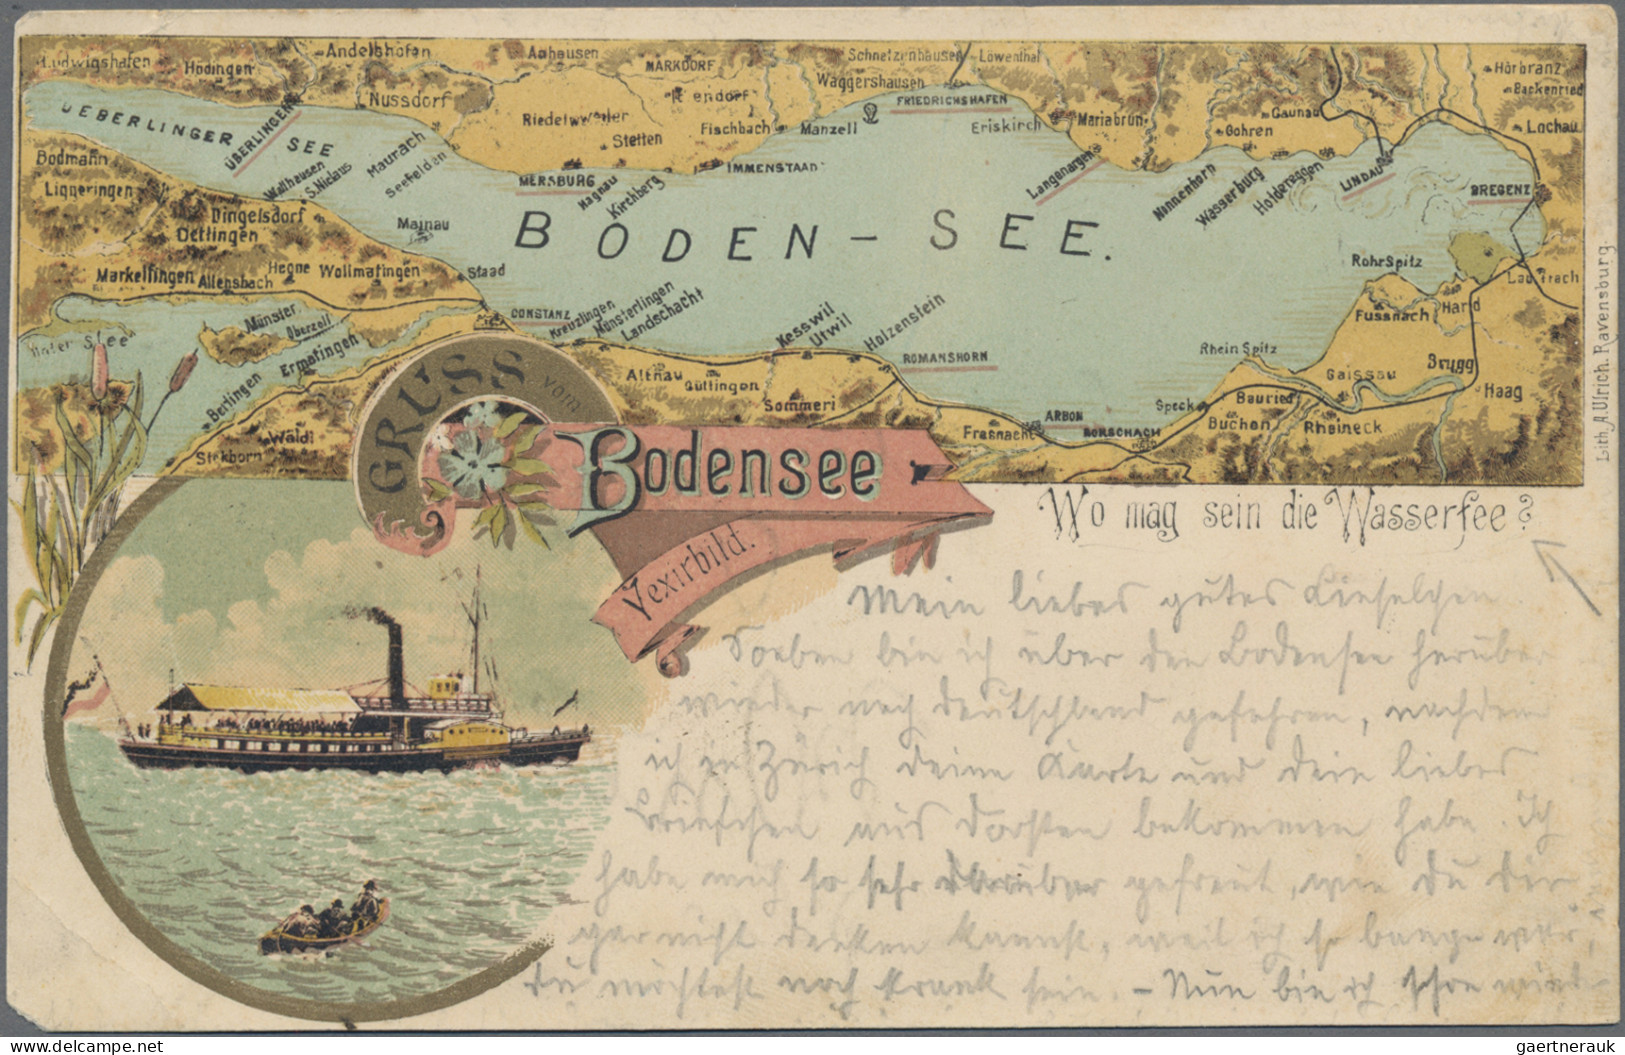 Ansichtskarten: Bayern: BAYERN, umfangreicher Posten von ca. 670 alten Ansichtsk